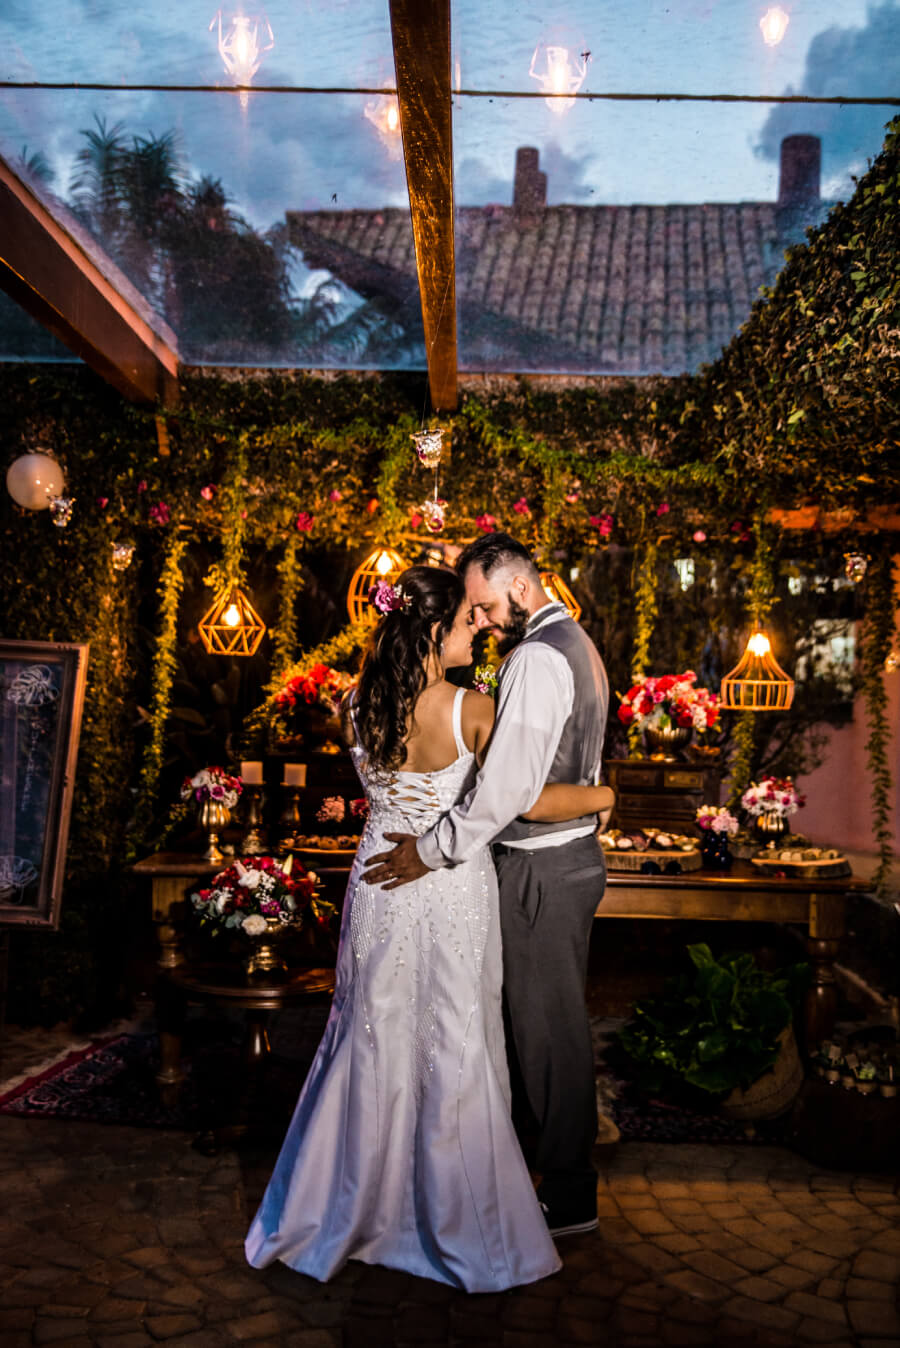 Fazenda Felicità: Destination wedding ímpar no interior de São Paulo